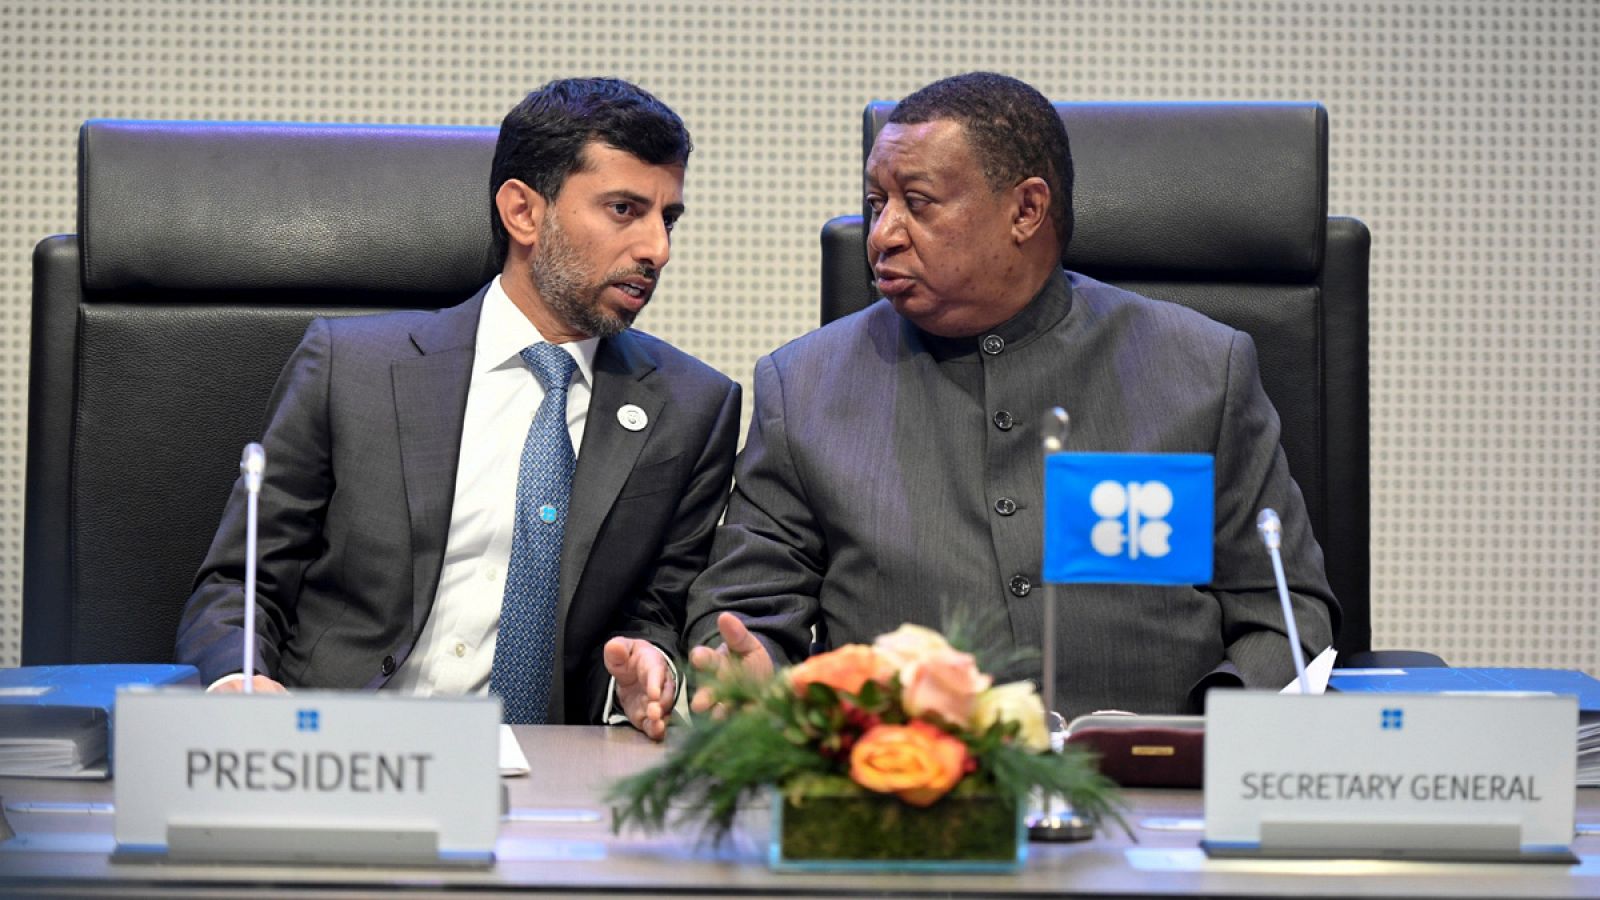 Suhail Mohammed Al Mazrouei, ministro de Energía de Emiratos Árabes Unidos y presidente de la Conferencia de la OPEP, conversa con el secretario general de la OPEP, Mohammed Barkidoprior